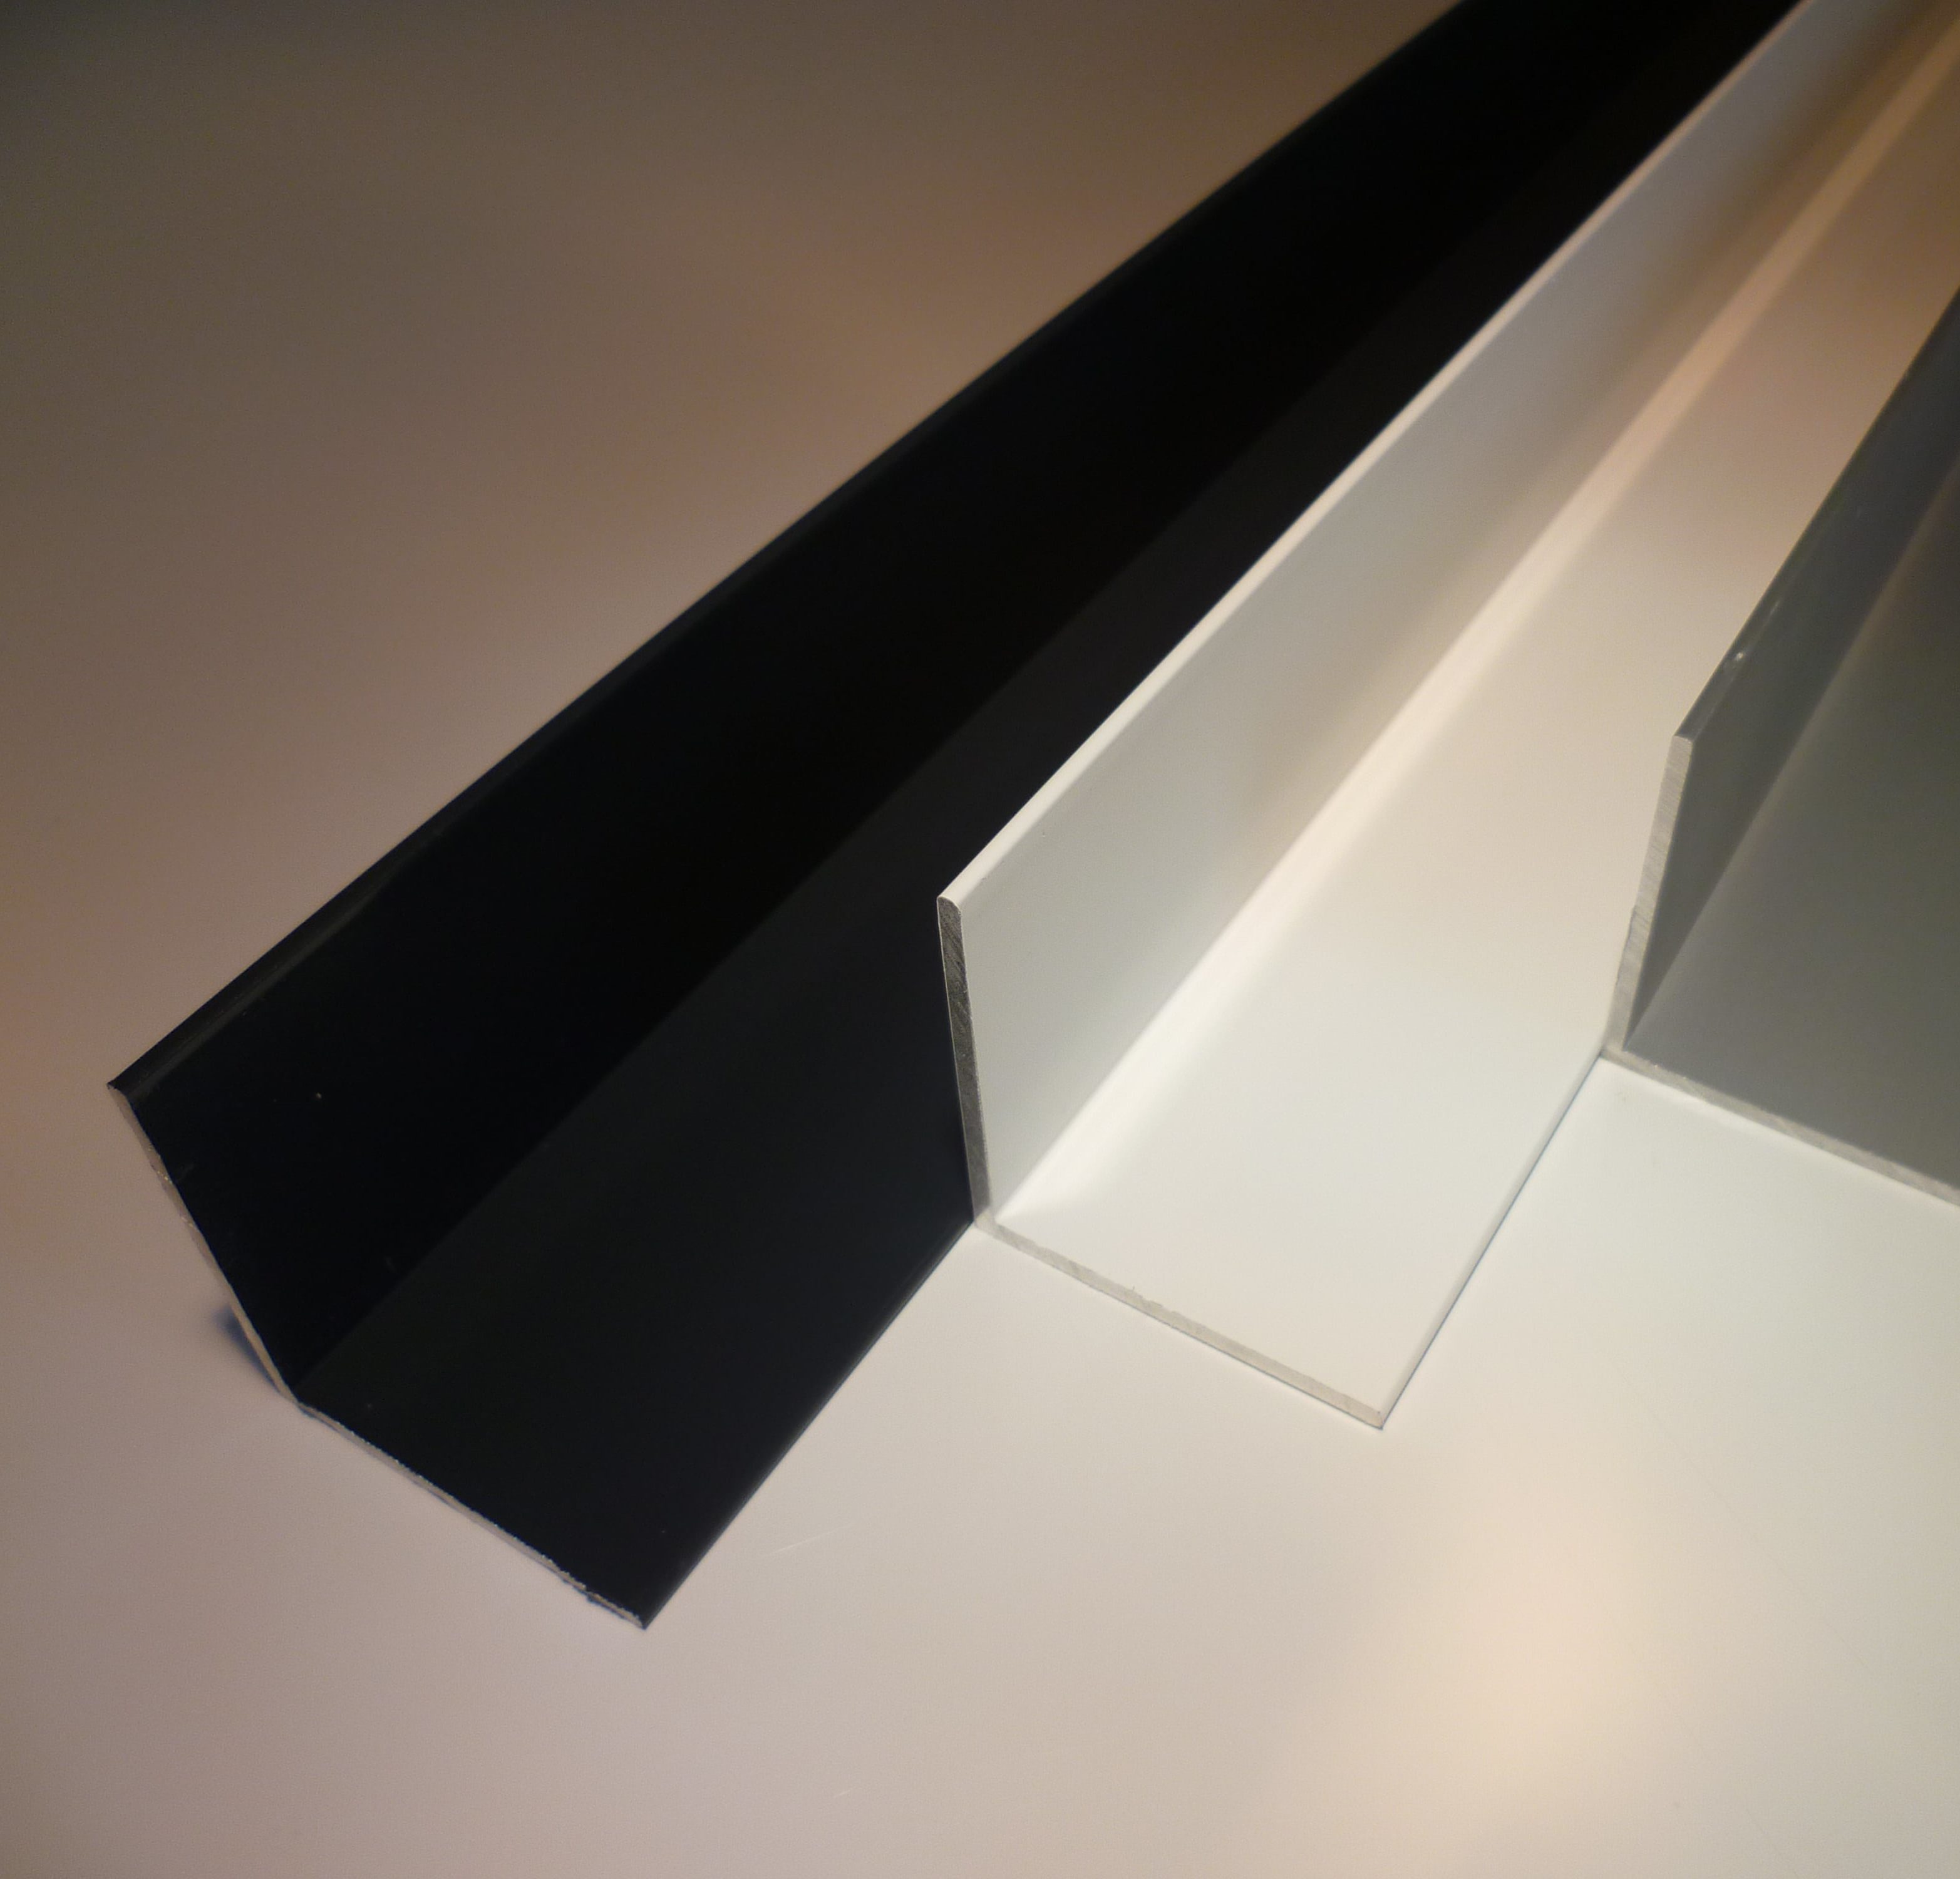 Aluminium Winkel silber eloxiert E6EV1 – 50 x 50 x 2 mm – Länge 2000 mm (2m)